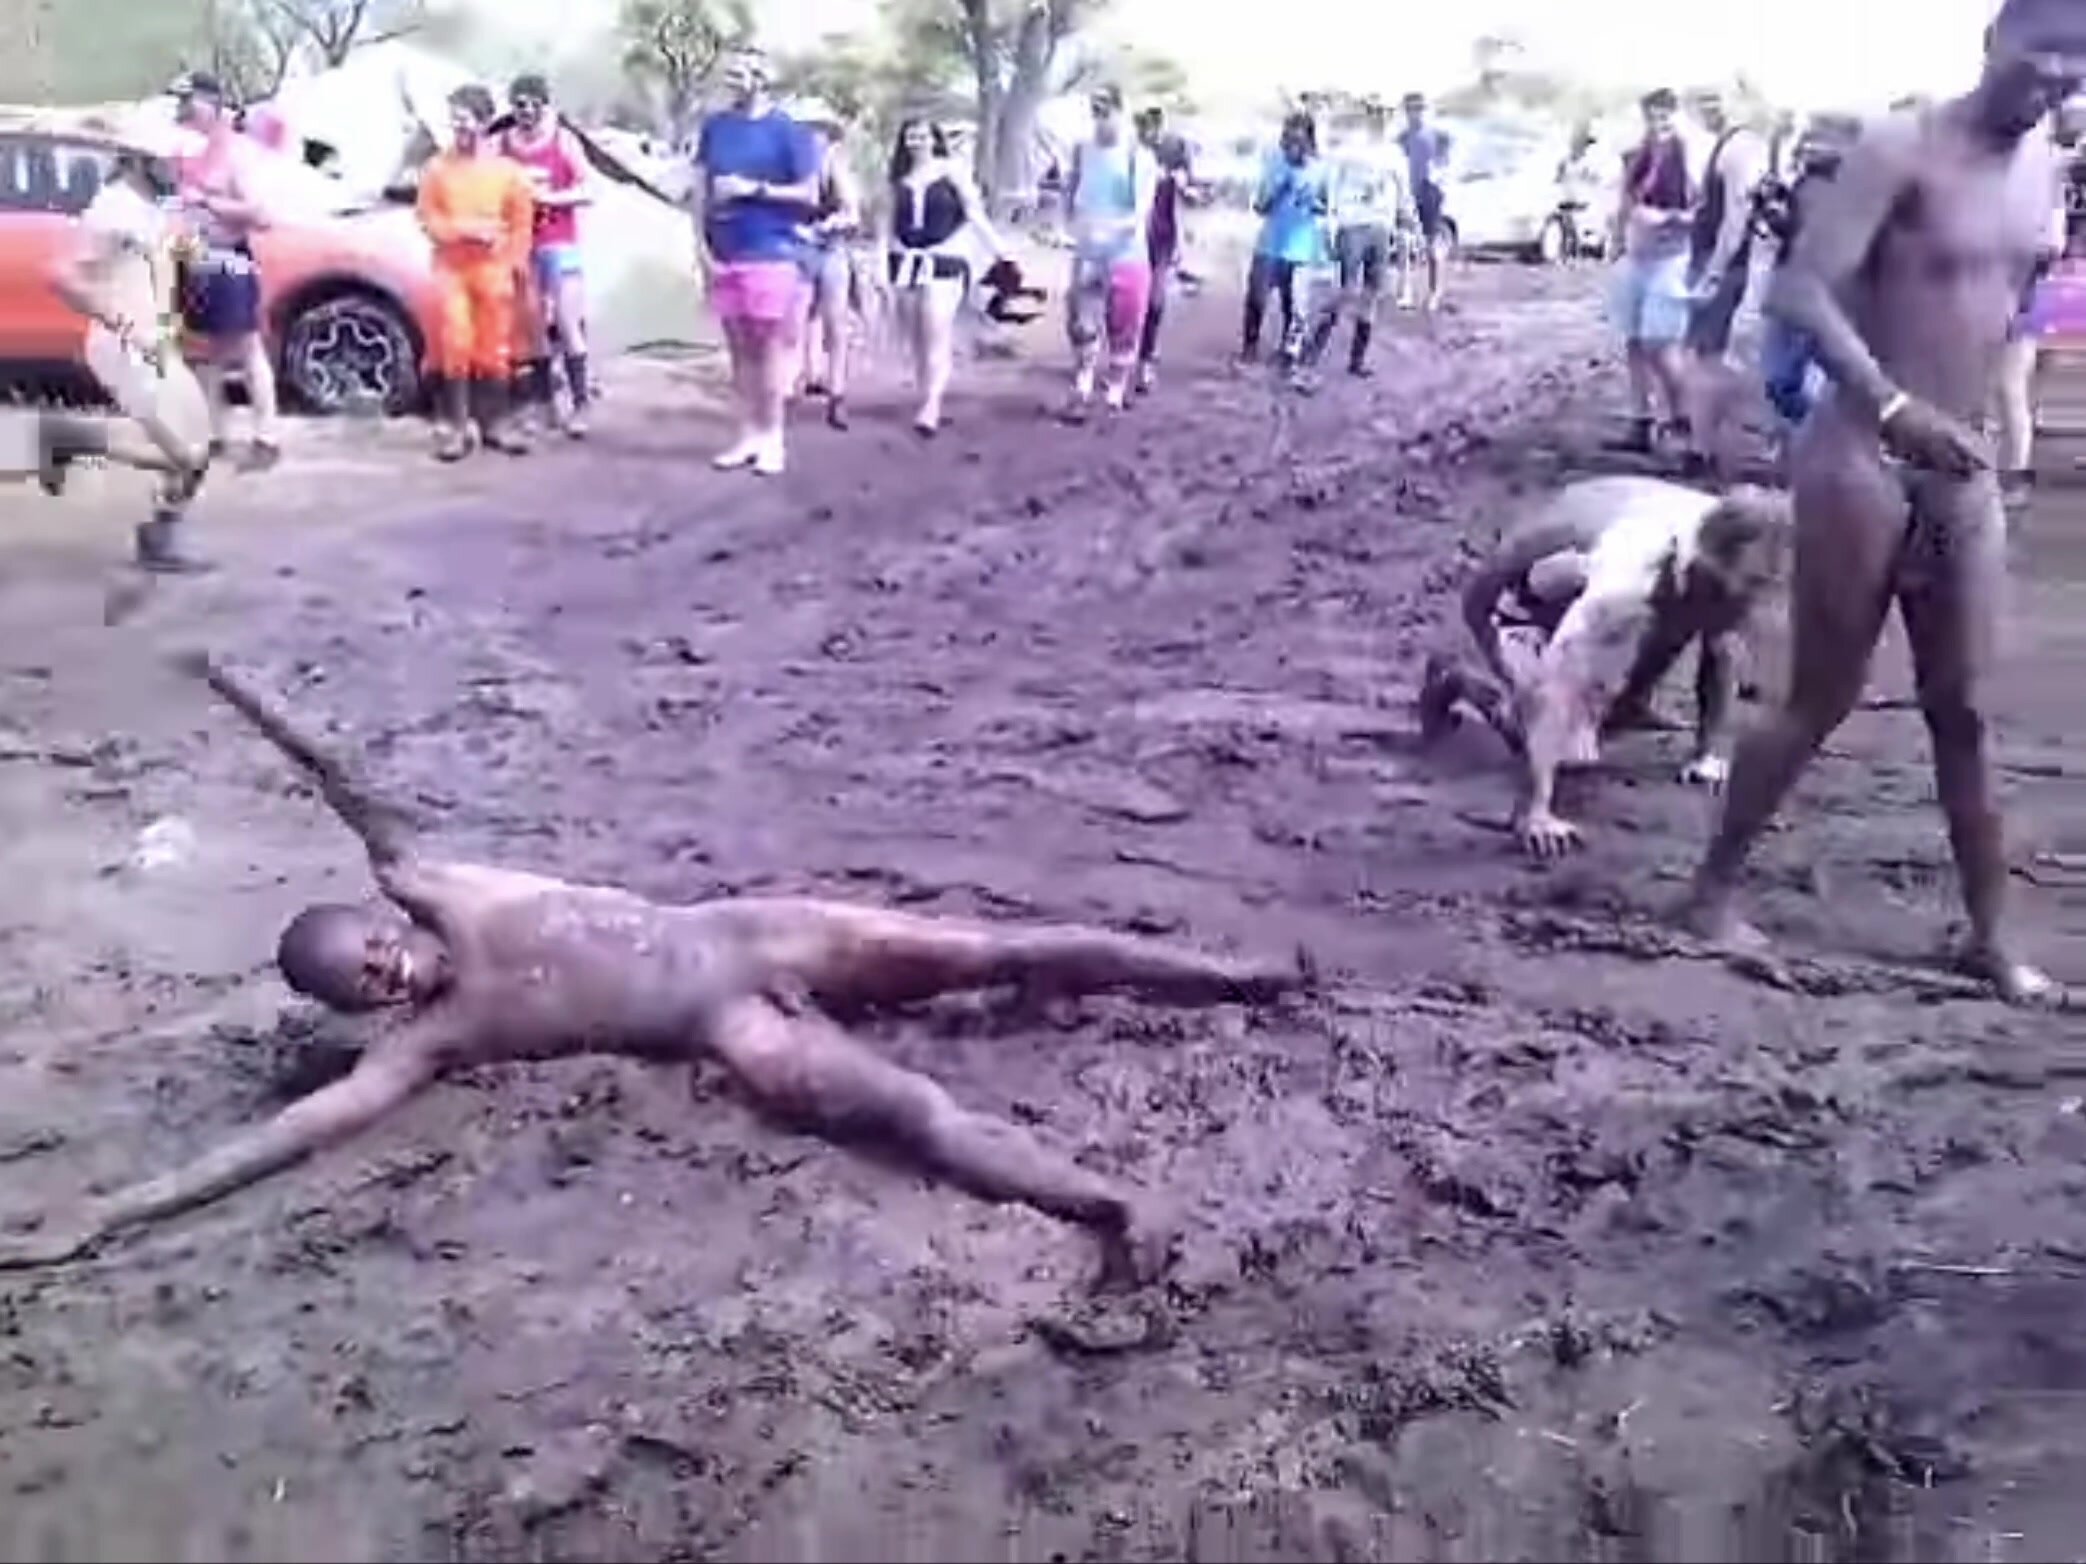 Naked Running Men Fall in Mud